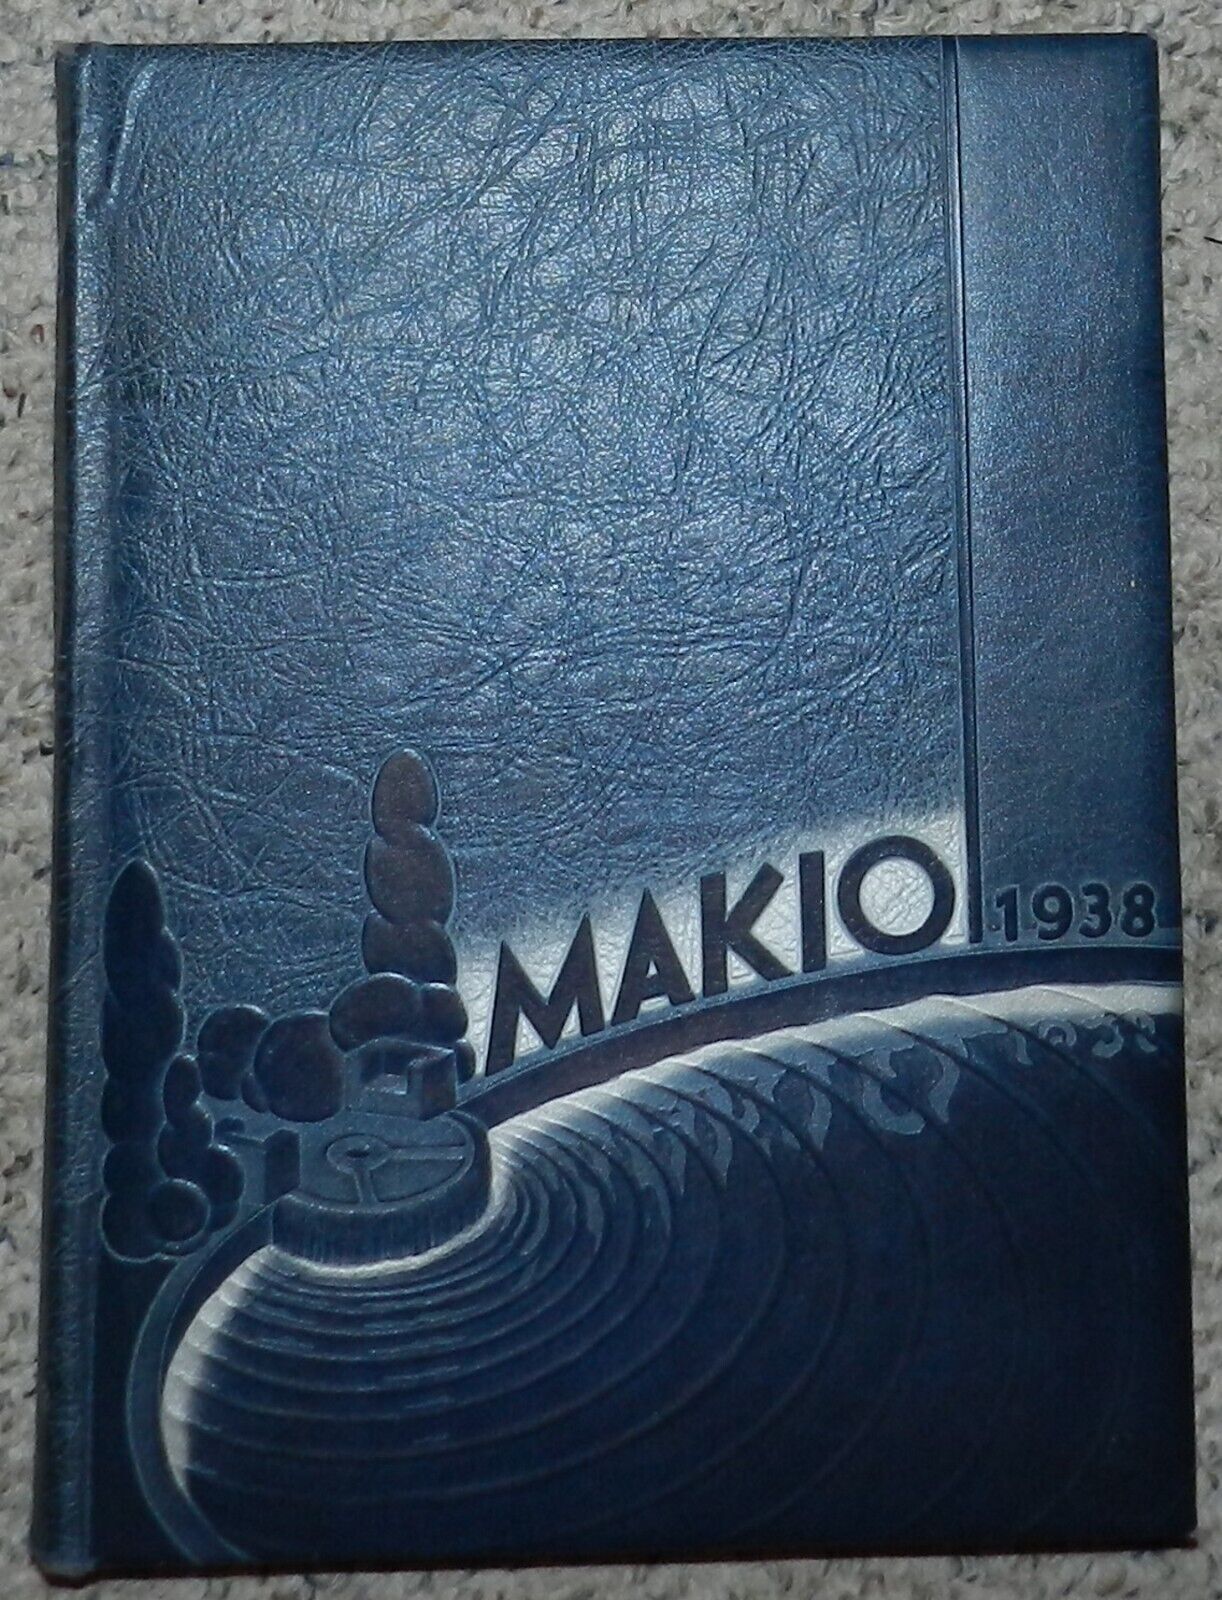 1938 Ohio State University Yearbook - Makio